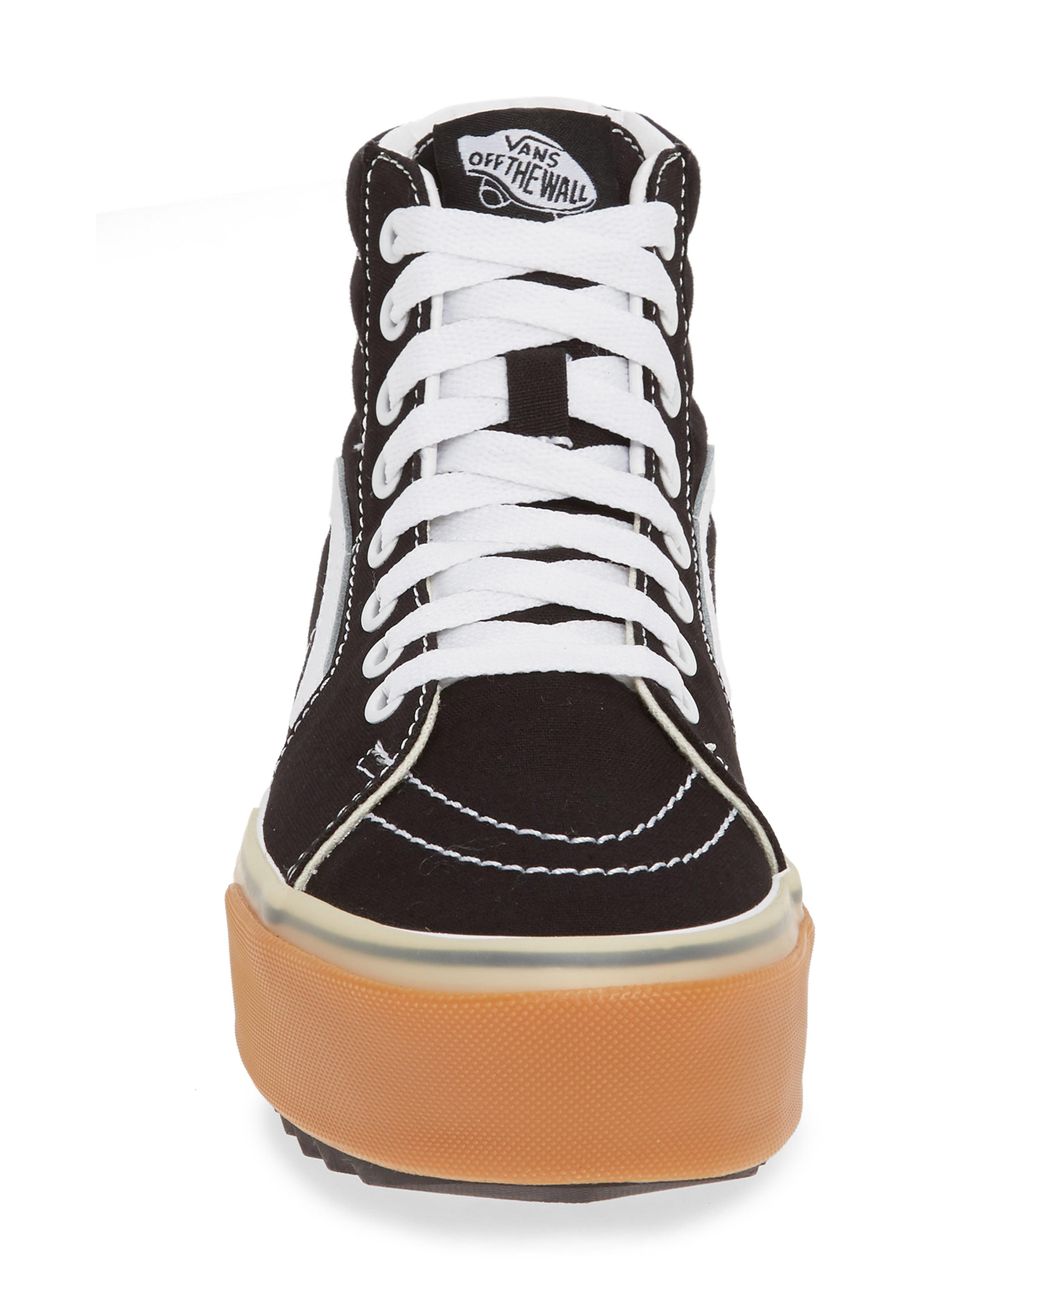 Vans Sk8-hi Stacked Check Platform High Sneaker in Black